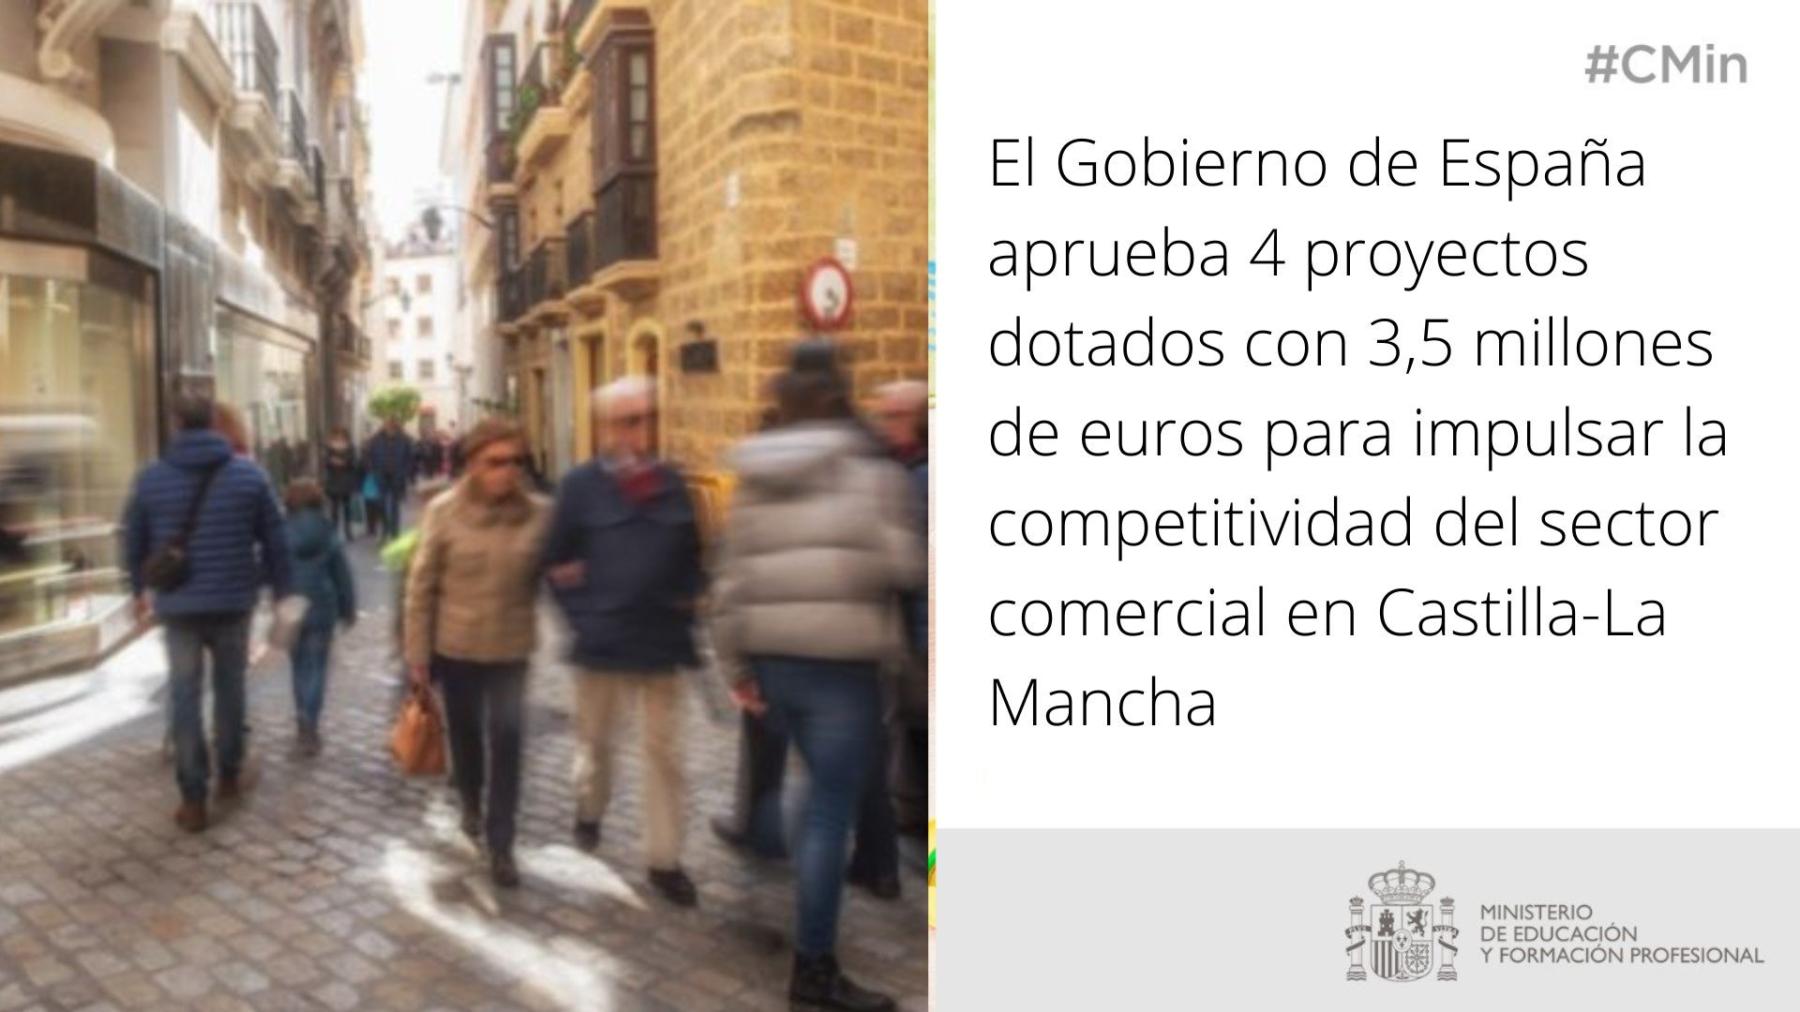 El Gobierno de España aprueba 4 proyectos dotados con 3,5 millones de euros para impulsar la competitividad del sector comercial en Castilla-La Mancha